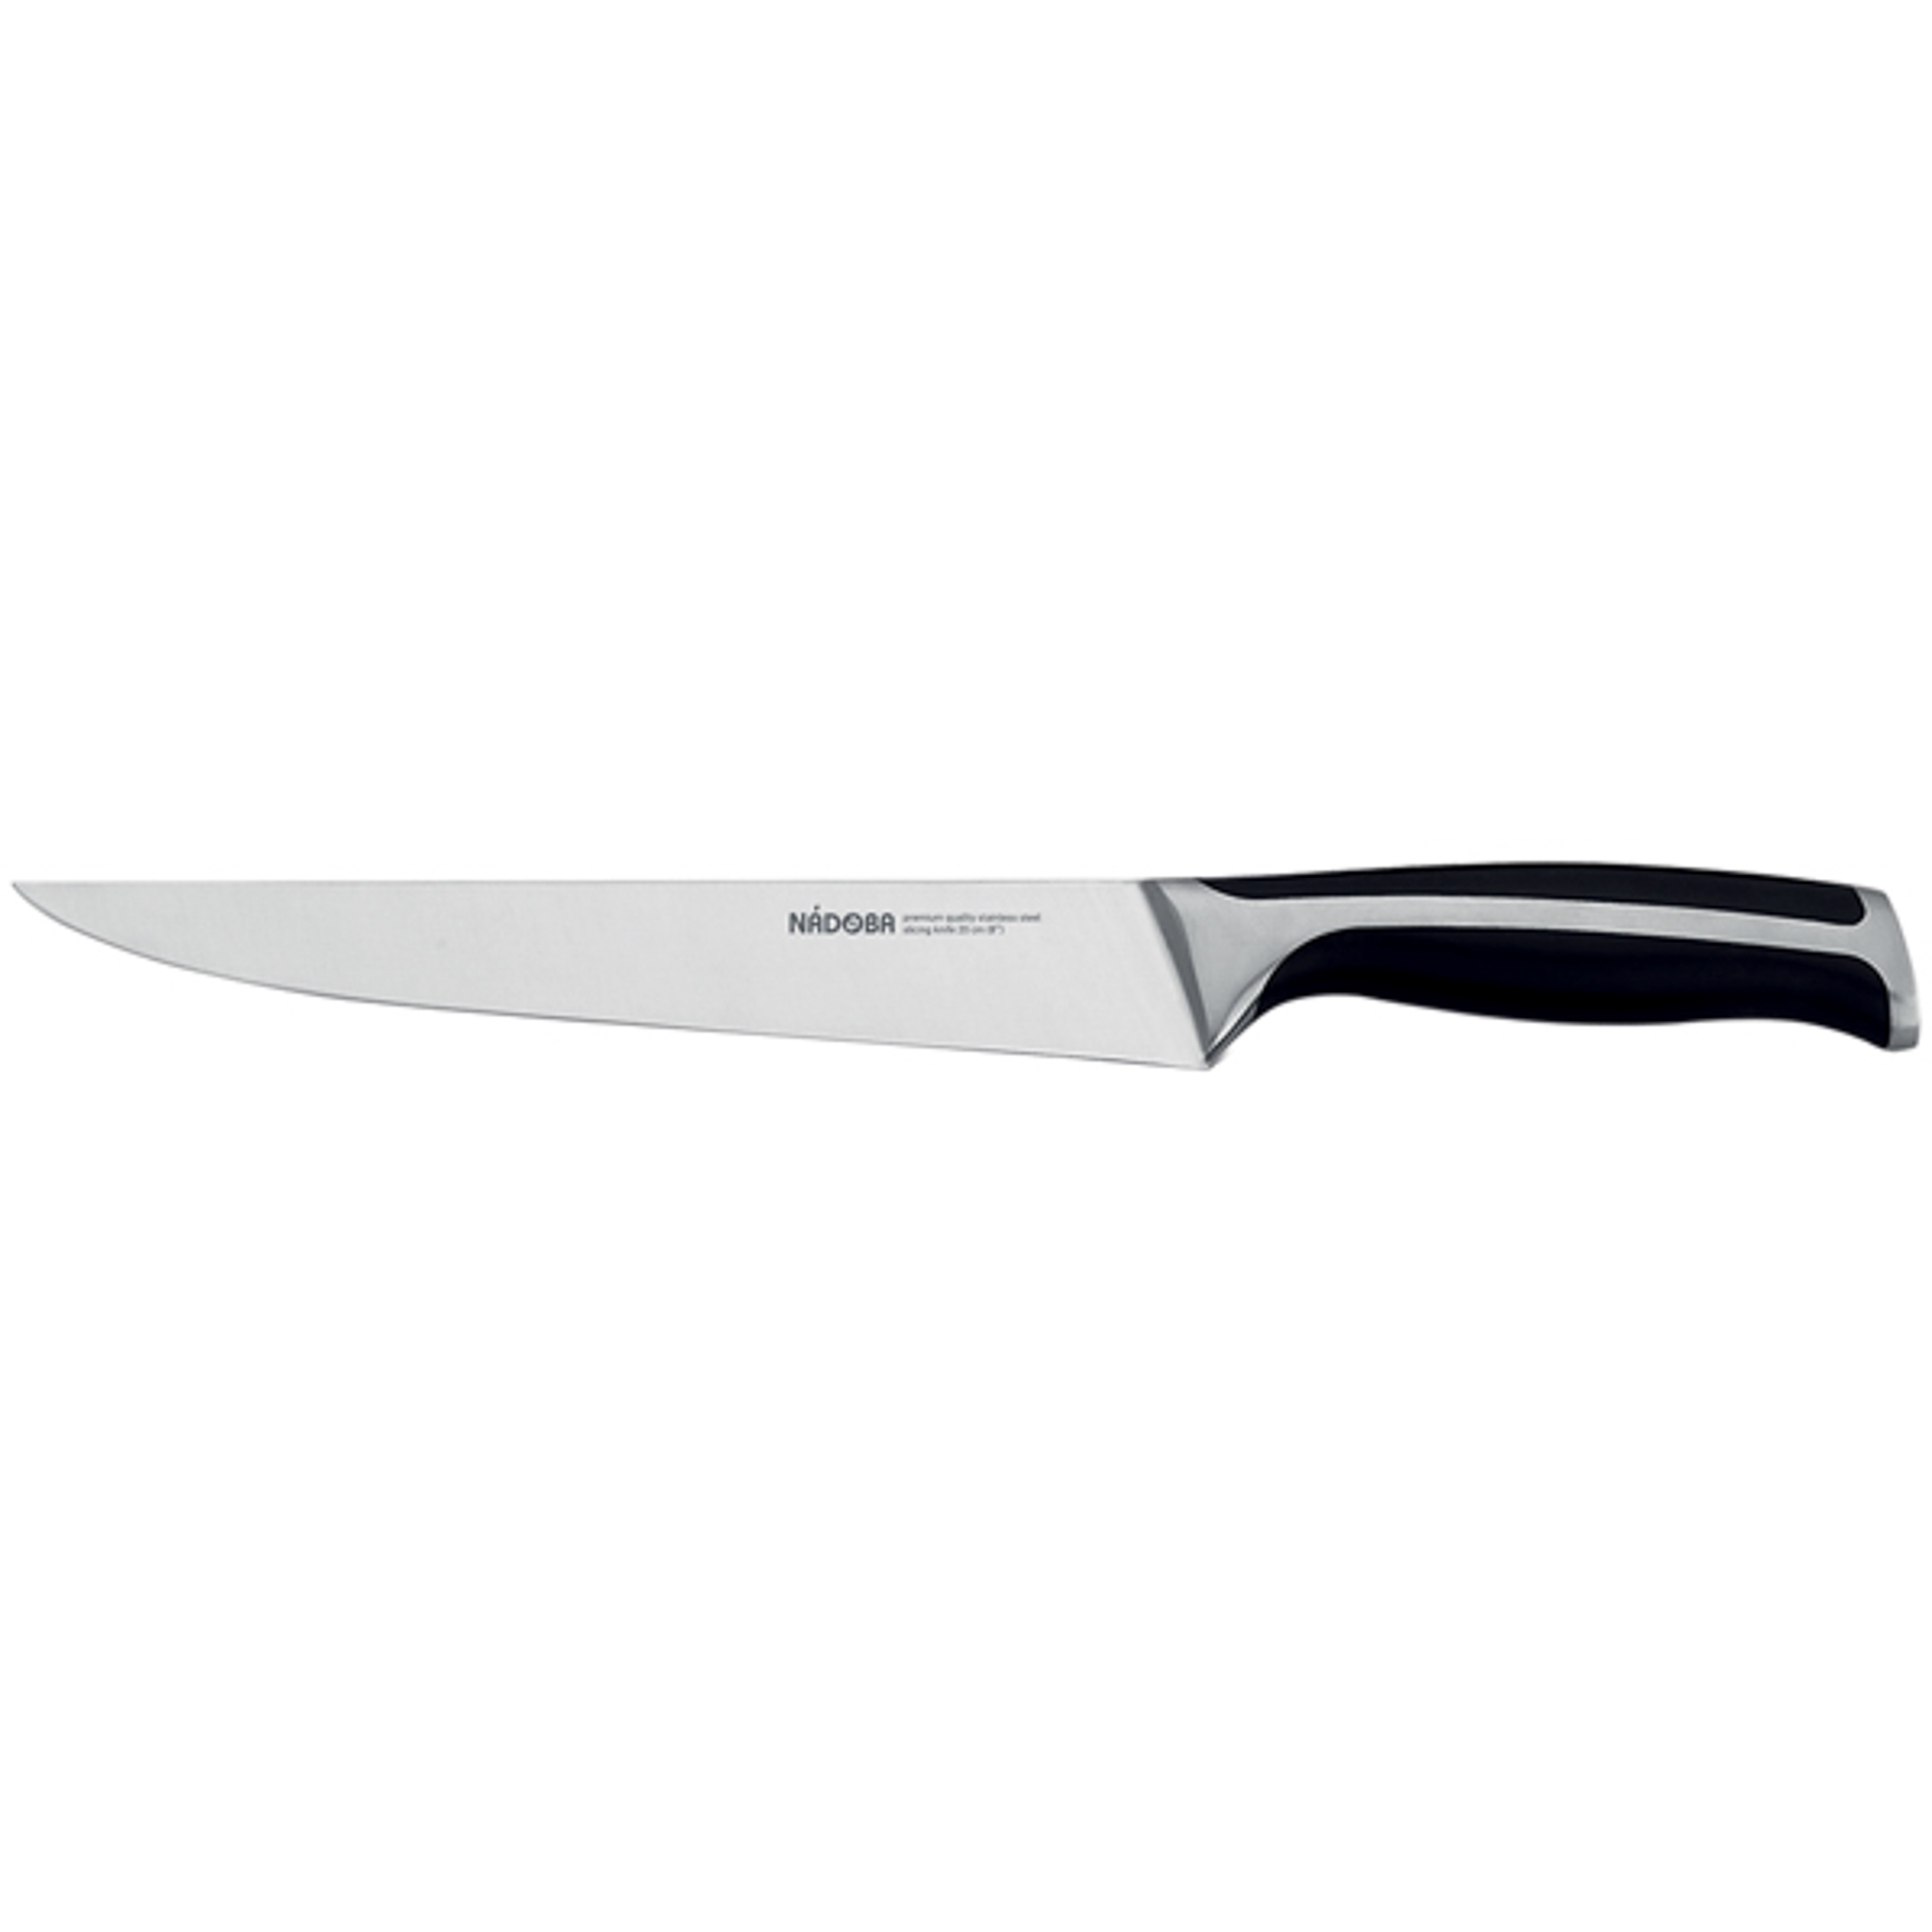 Нож разделочный 20 см Nadoba ursa нож разделочный nadoba ursa 20 см